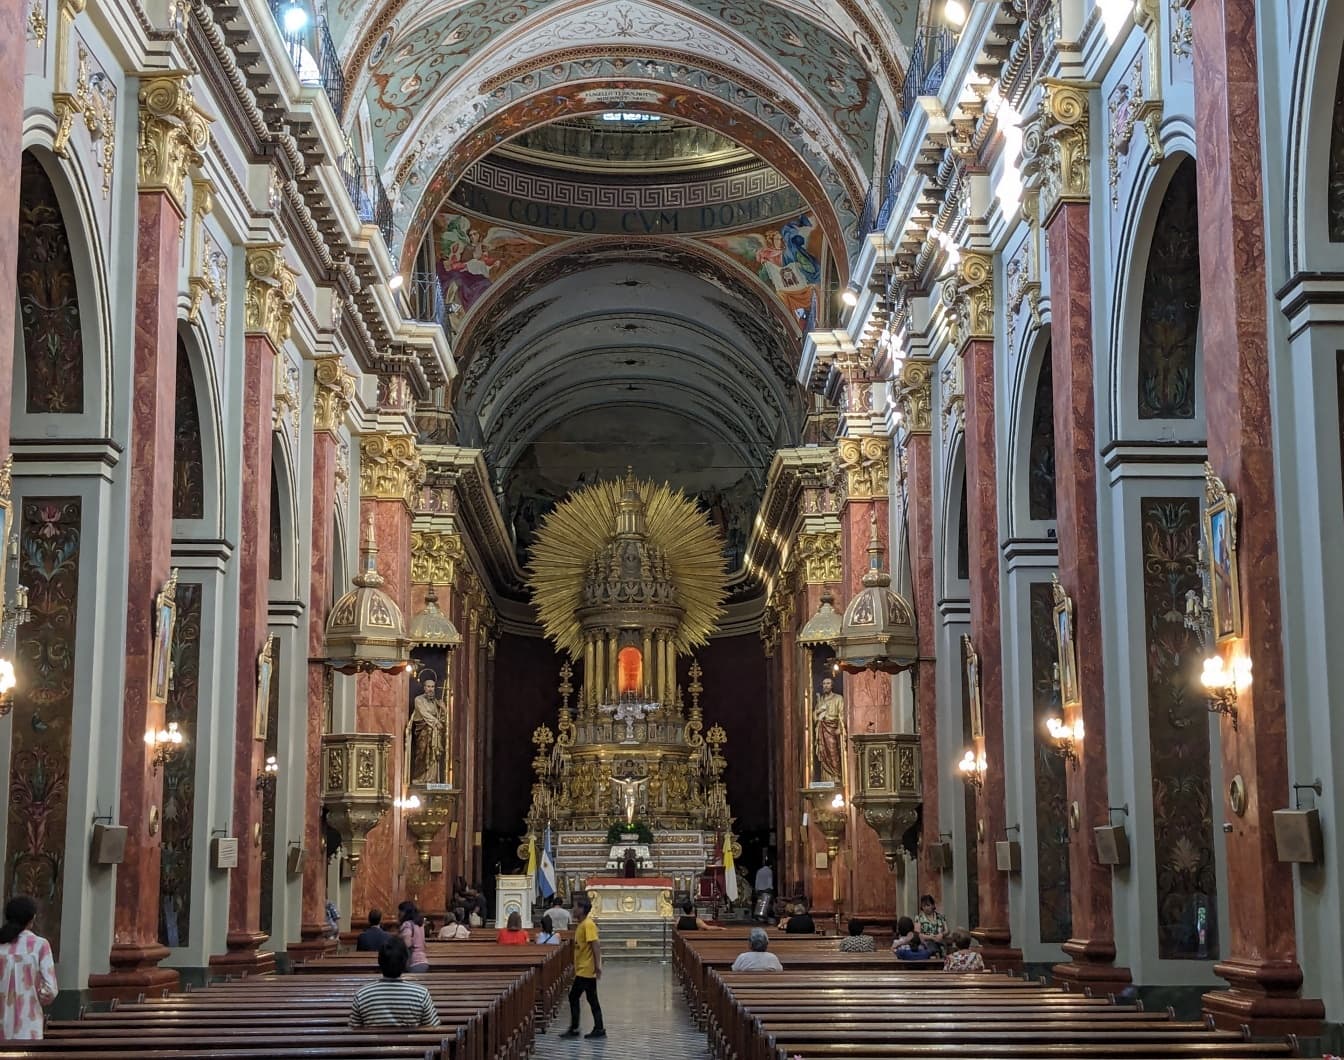 Saltan katedraalin uskomaton sisustus Luoteis-Argentiinassa Etelä-Amerikassa